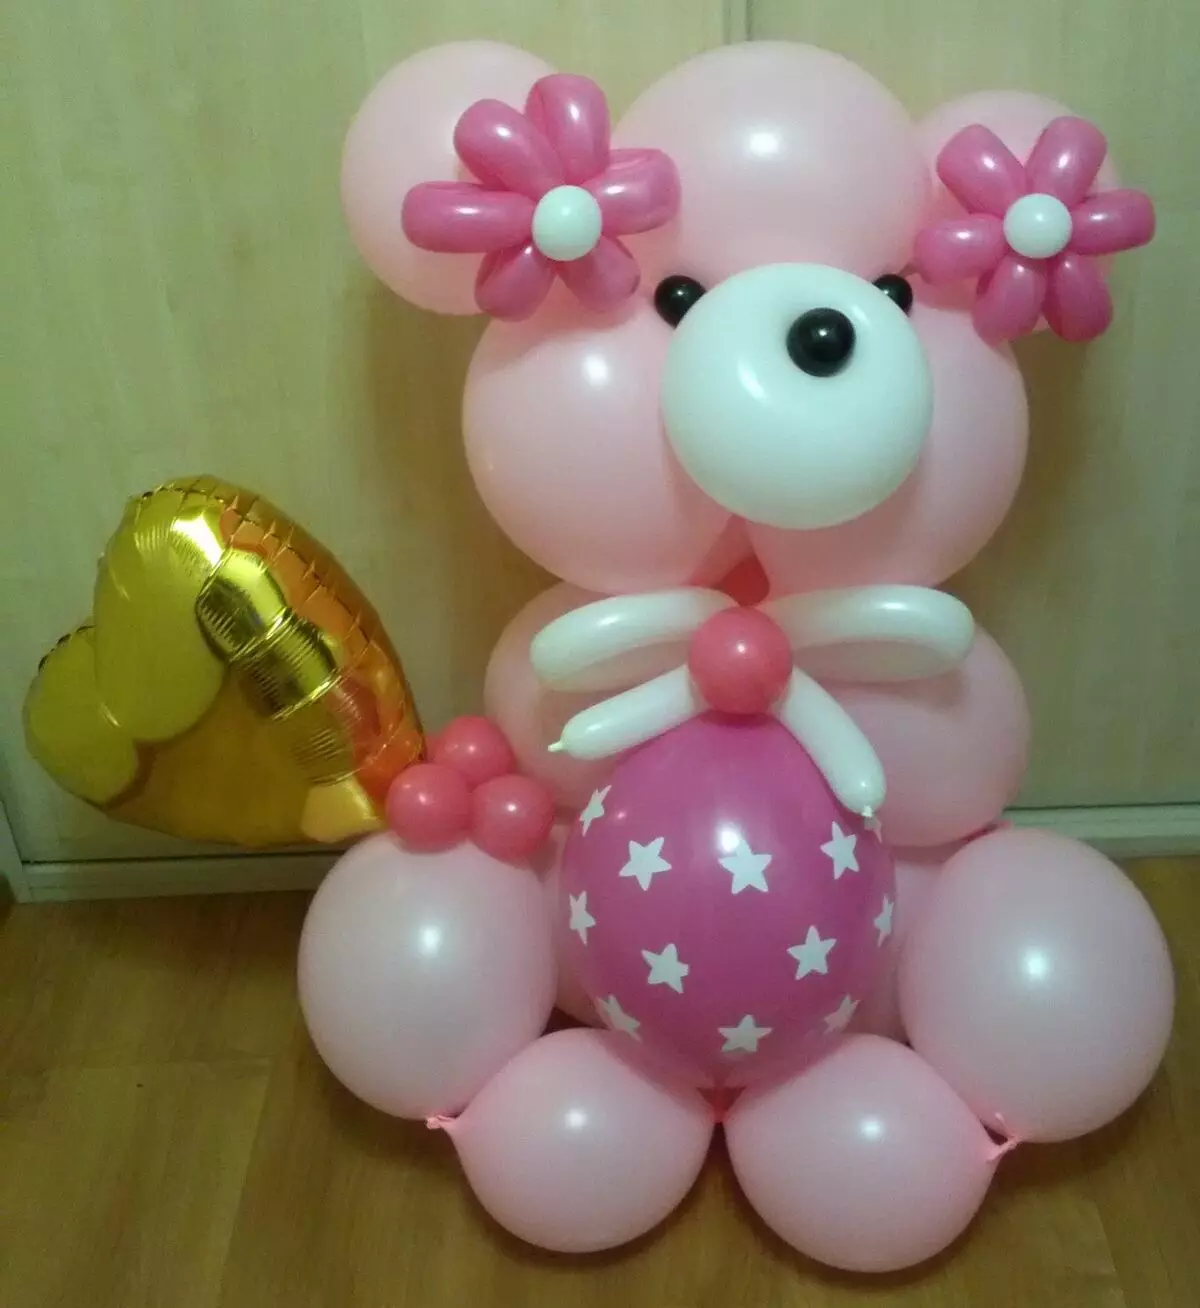 Balloons - Chinhu chakakosha kushongedza chinhu munaFebruary 14